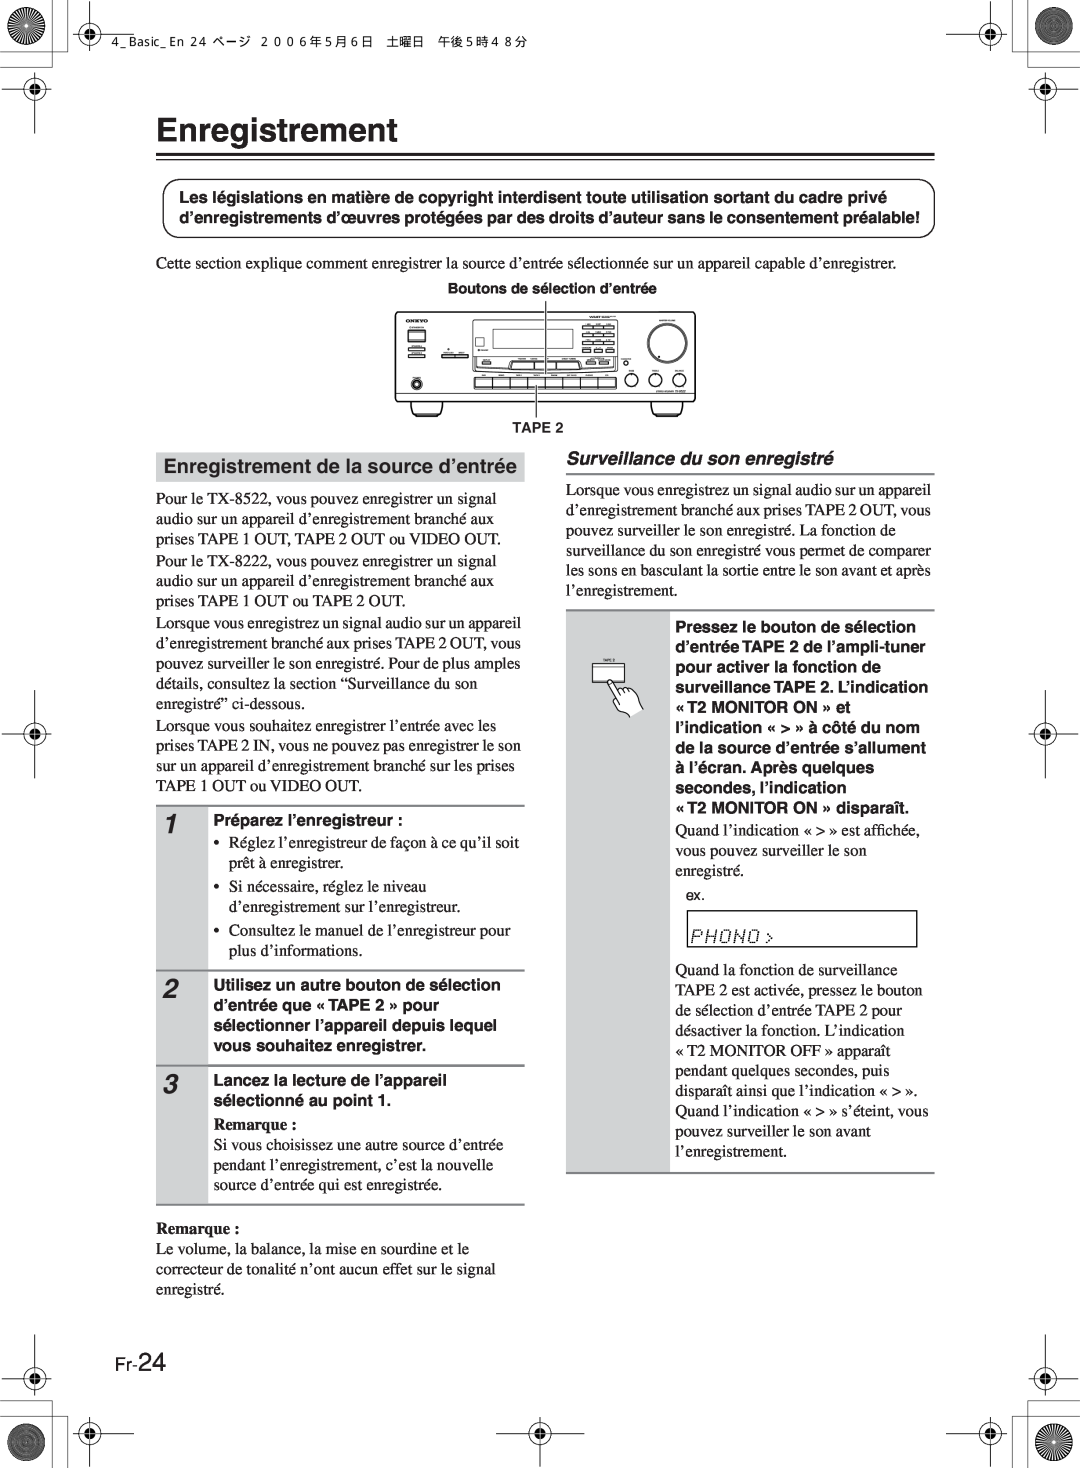 Onkyo TX-8222, TX-8522 manual Surveillance du son enregistré, Fr-24, Enregistrement de la source d’entrée, Remarque 